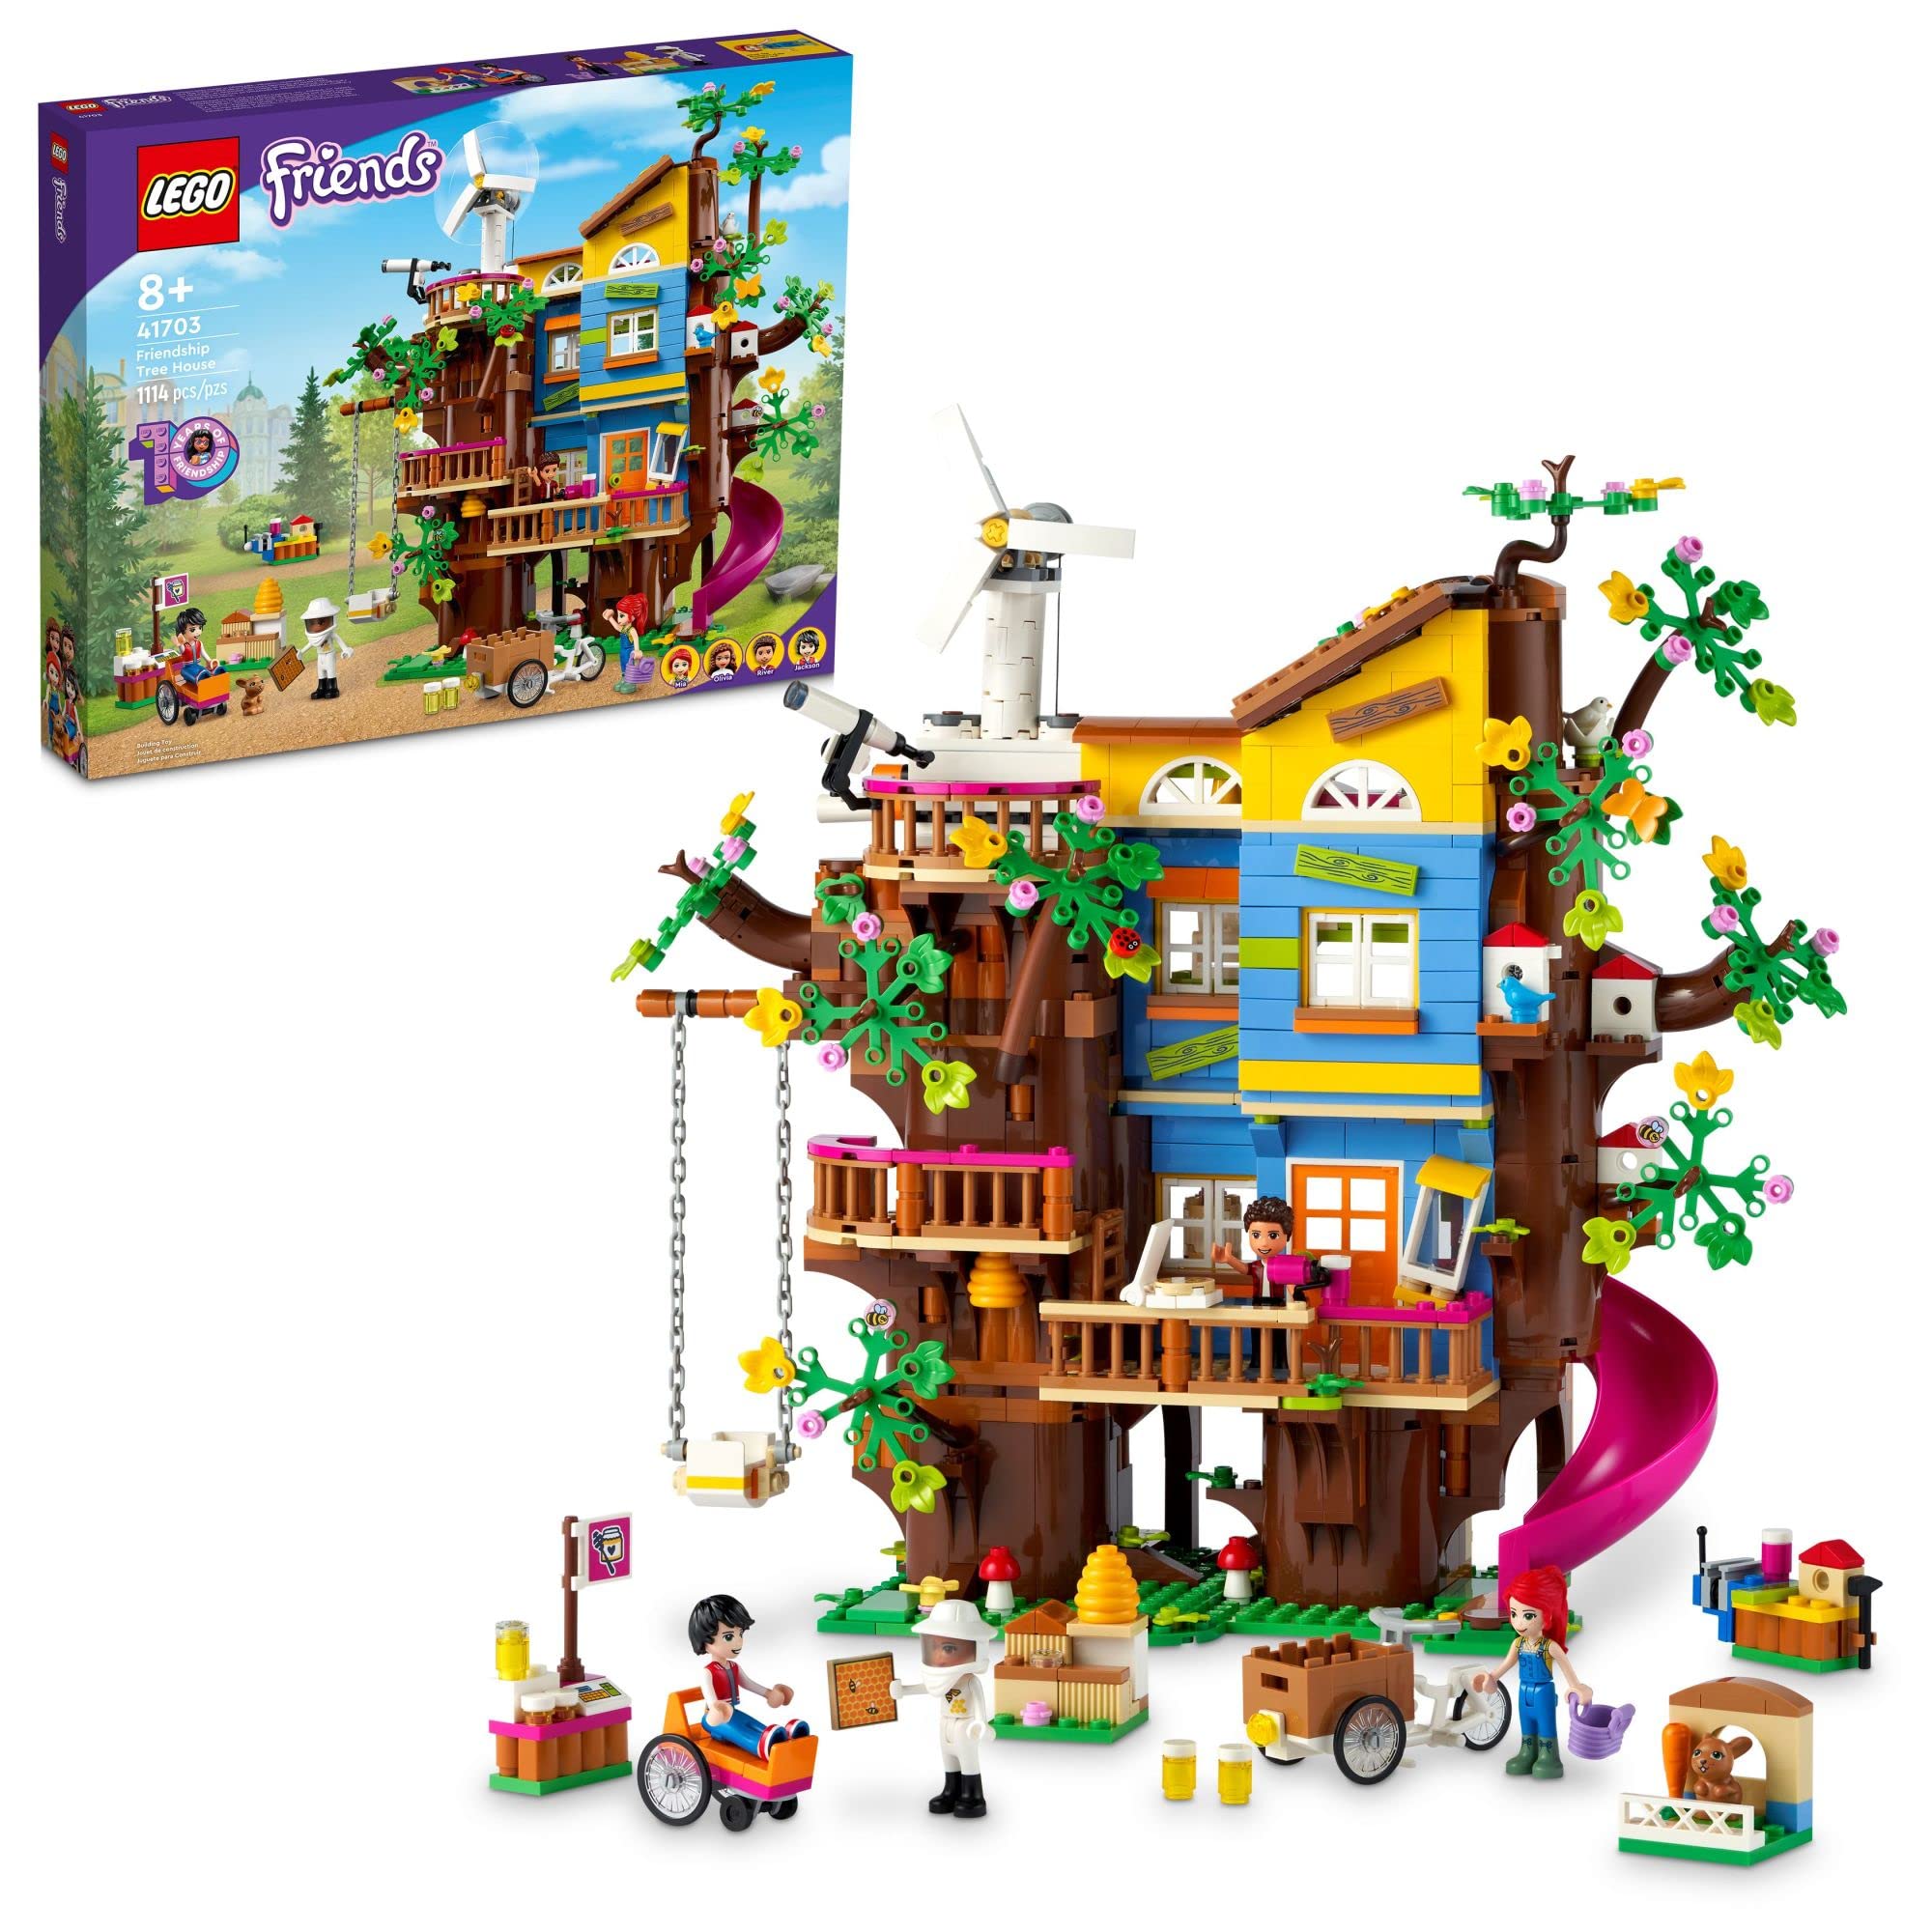 LEGO Friends Friendship Tree House 41703 Kit de constru...